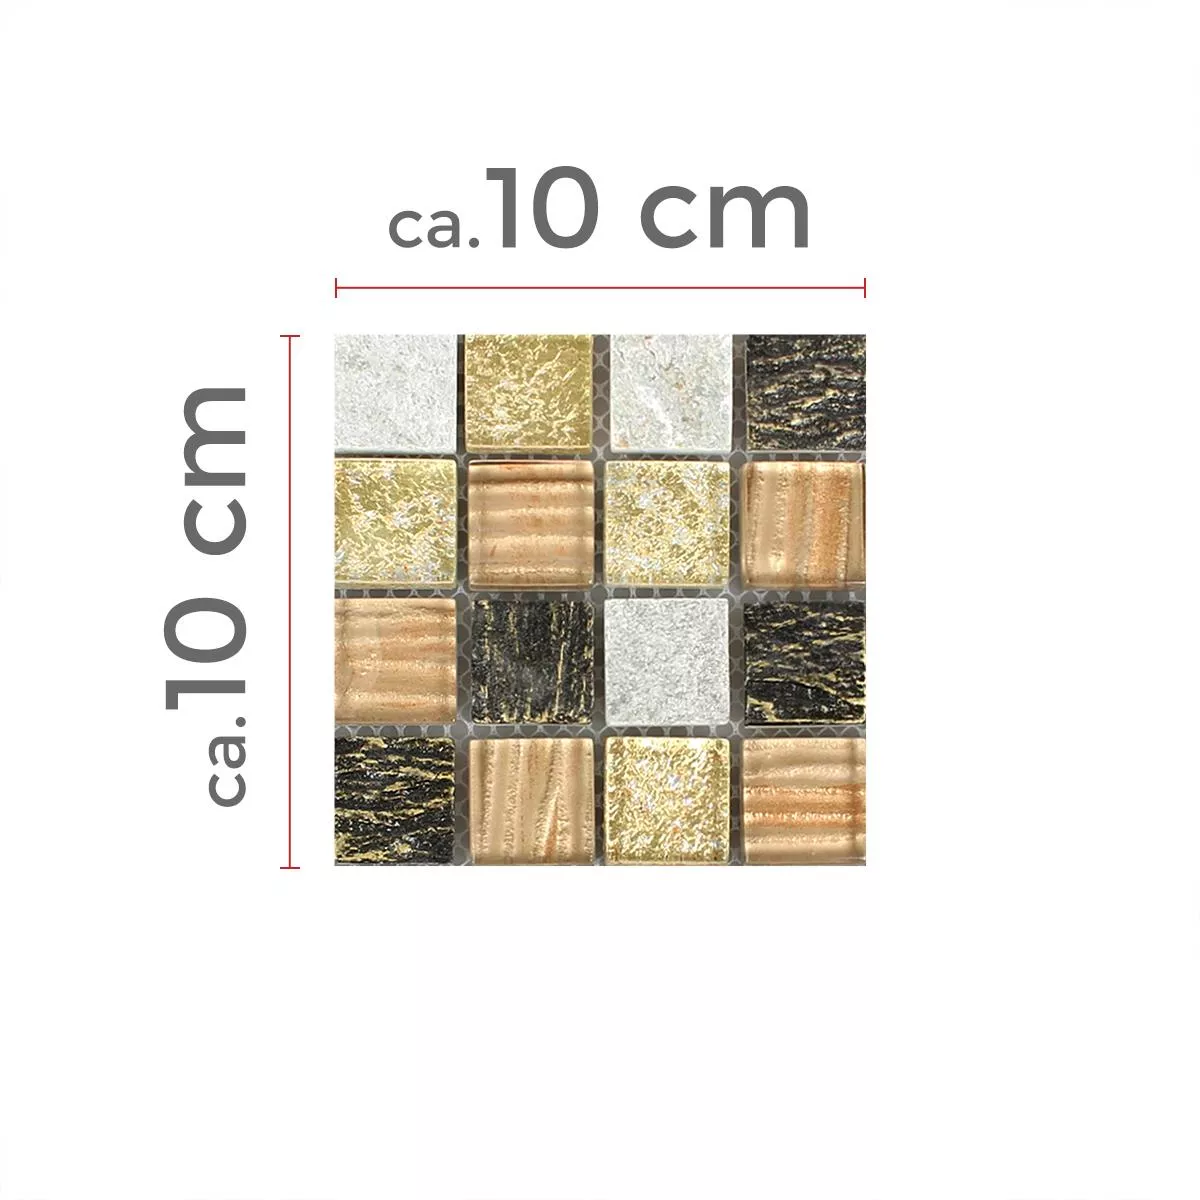 Muster von Mosaikfliesen Glas Stein Mix Canova Gold Braun